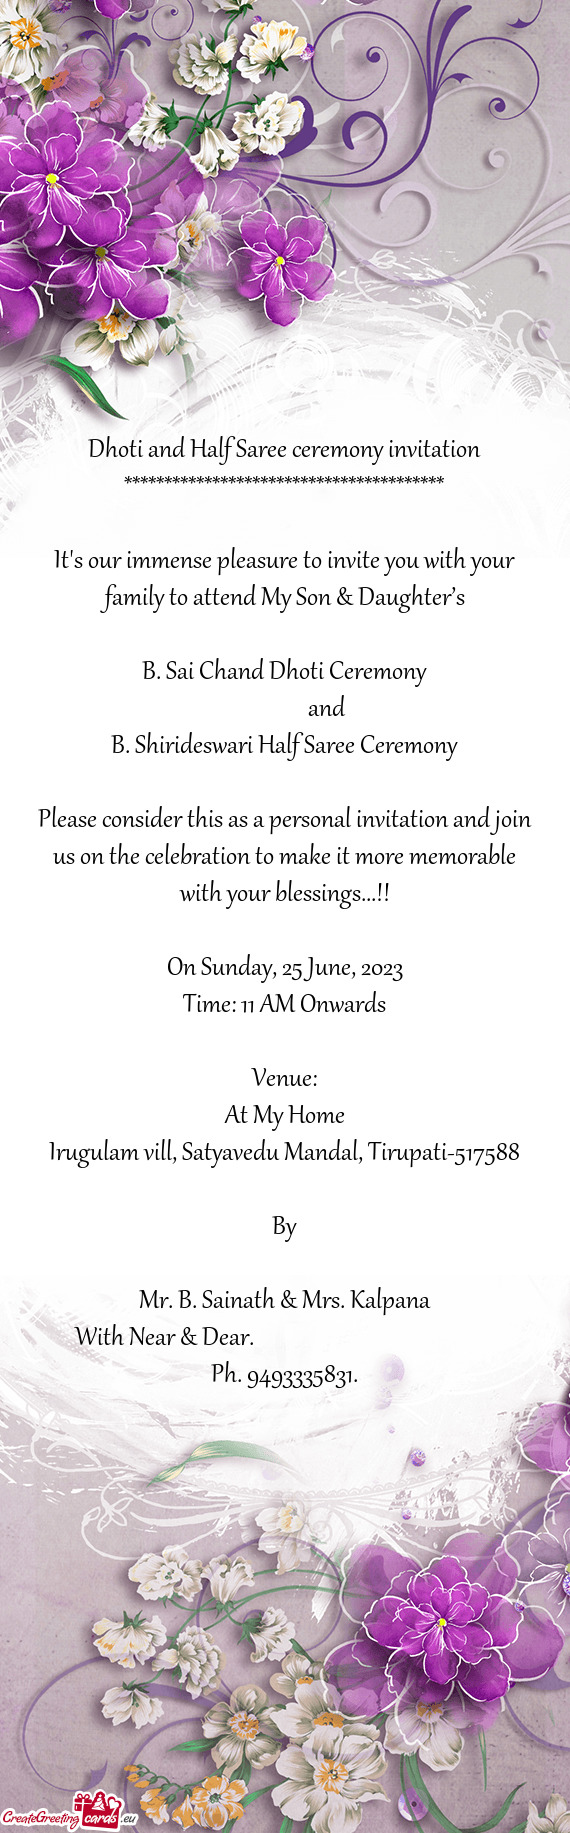 B. Sai Chand Dhoti Ceremony